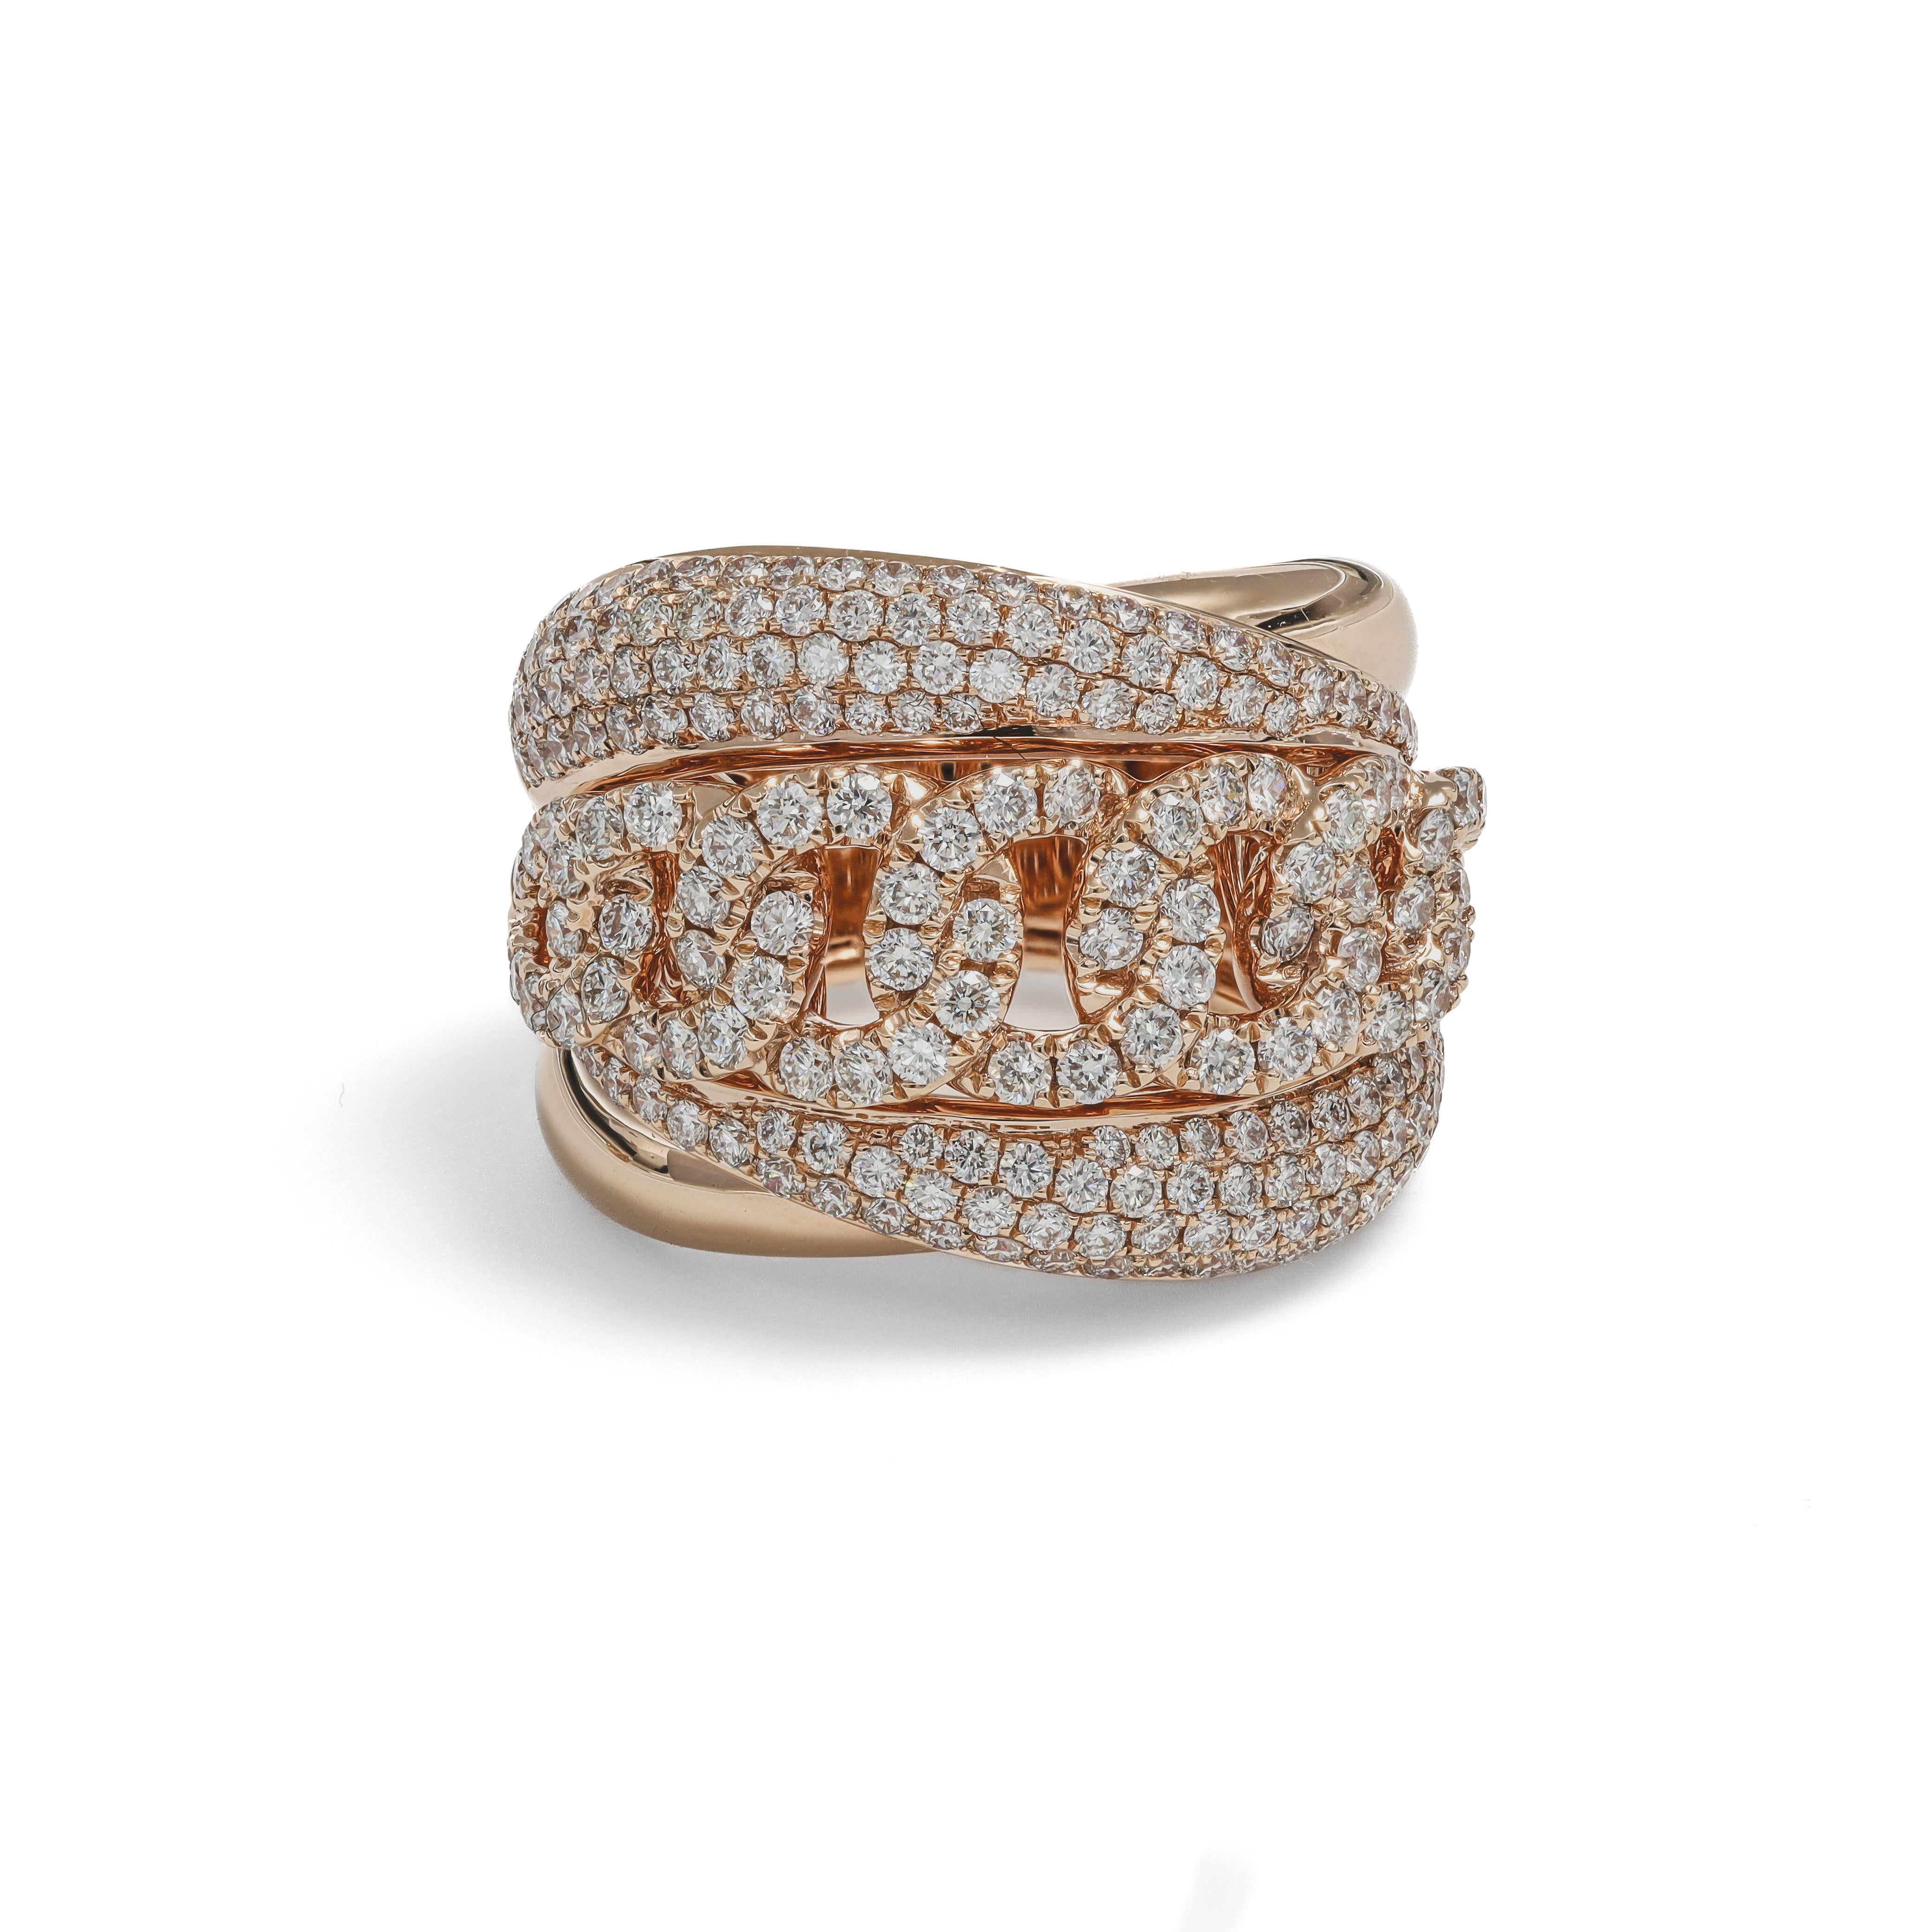 Ein außergewöhnlicher Cuban Link Pave Set Diamond Ring aus luxuriösem 18 KT Roségold. Dieser Ring ist ein wahrer Ausdruck von Opulenz und Raffinesse. Er ist mit insgesamt 1,97 Karat schillernden Diamanten besetzt.

Das Herzstück ist unser